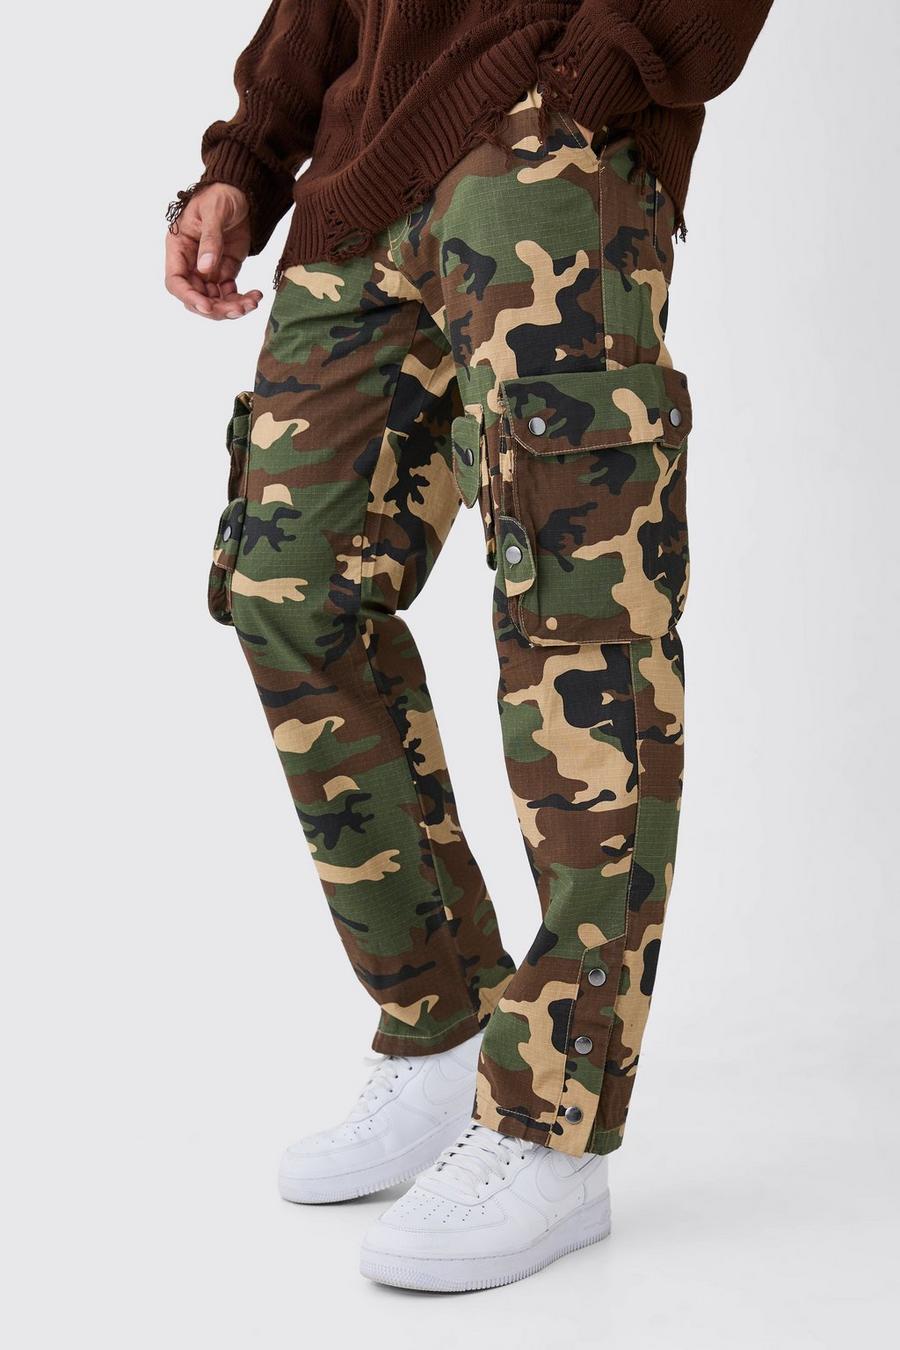 Pantaloni dritti in nylon ripstop in fantasia militare in rilievo con dettagli stile Cargo, Khaki